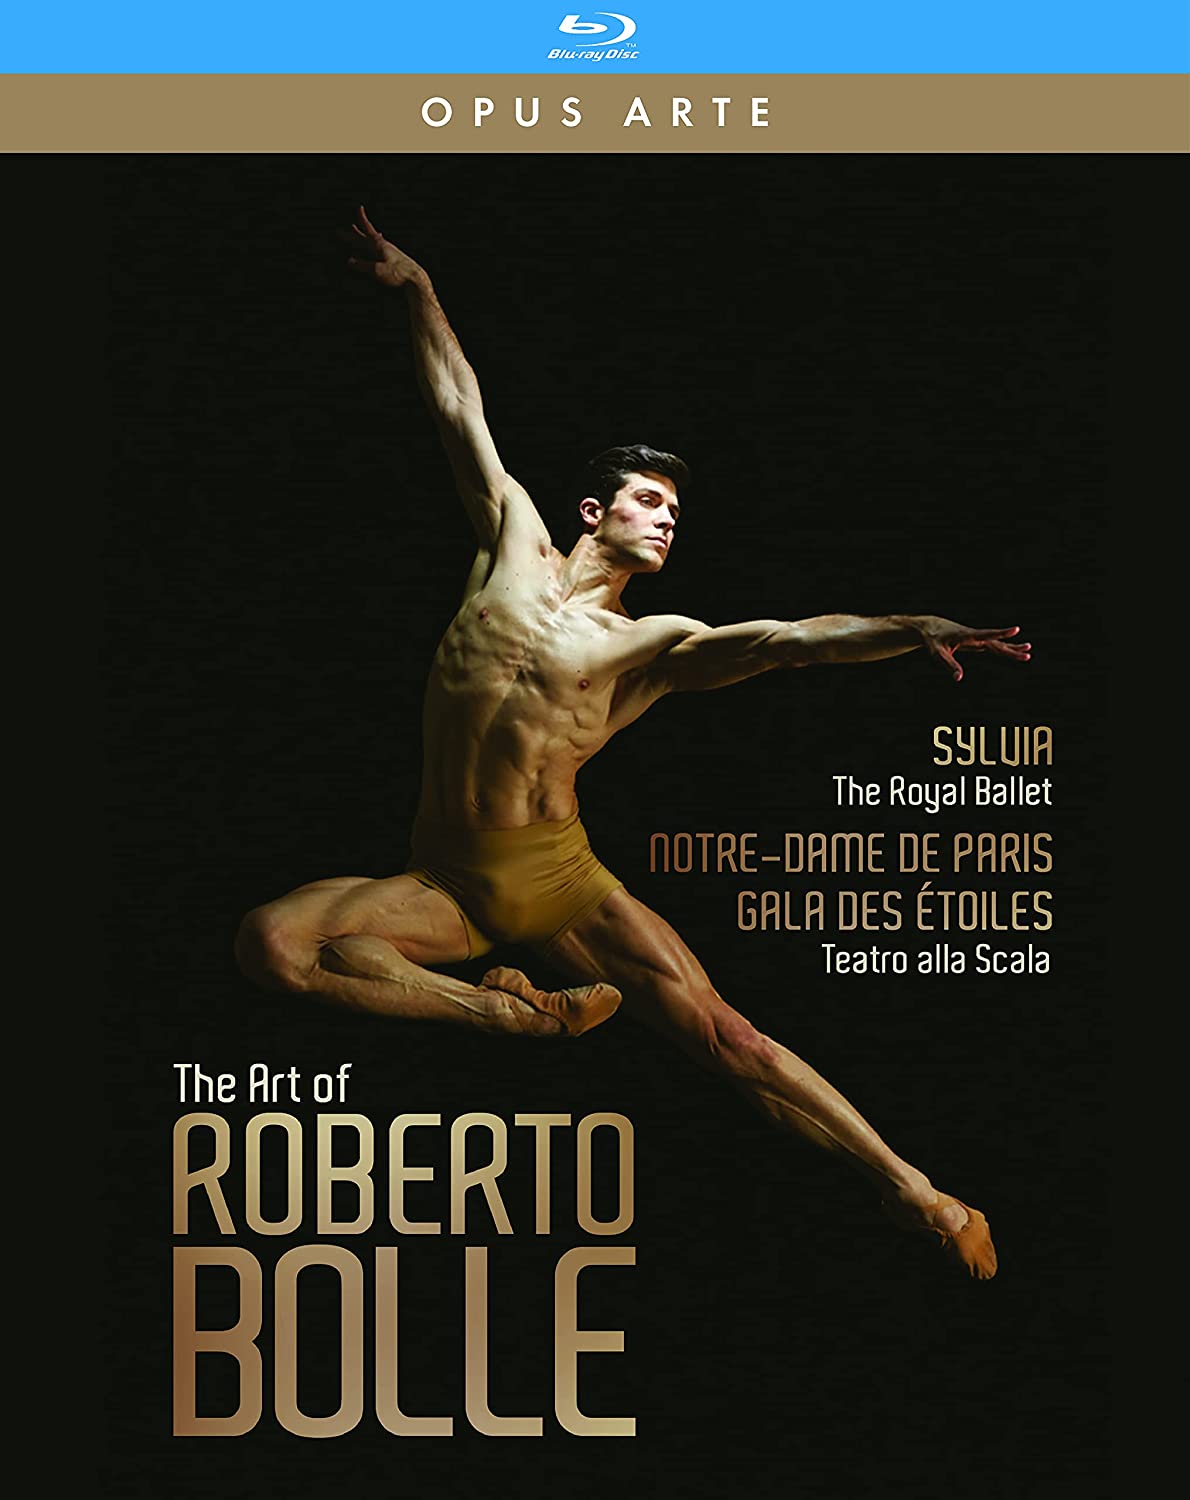 イタリア屈指のバレエ・ダンサー、ロベルト・ボッレの魅力を凝縮した3枚組BOX『ロベルト・ボッレの芸術』、DVDu0026Blu-rayが2021年6月25日発売  | バレエニュースダイジェスト